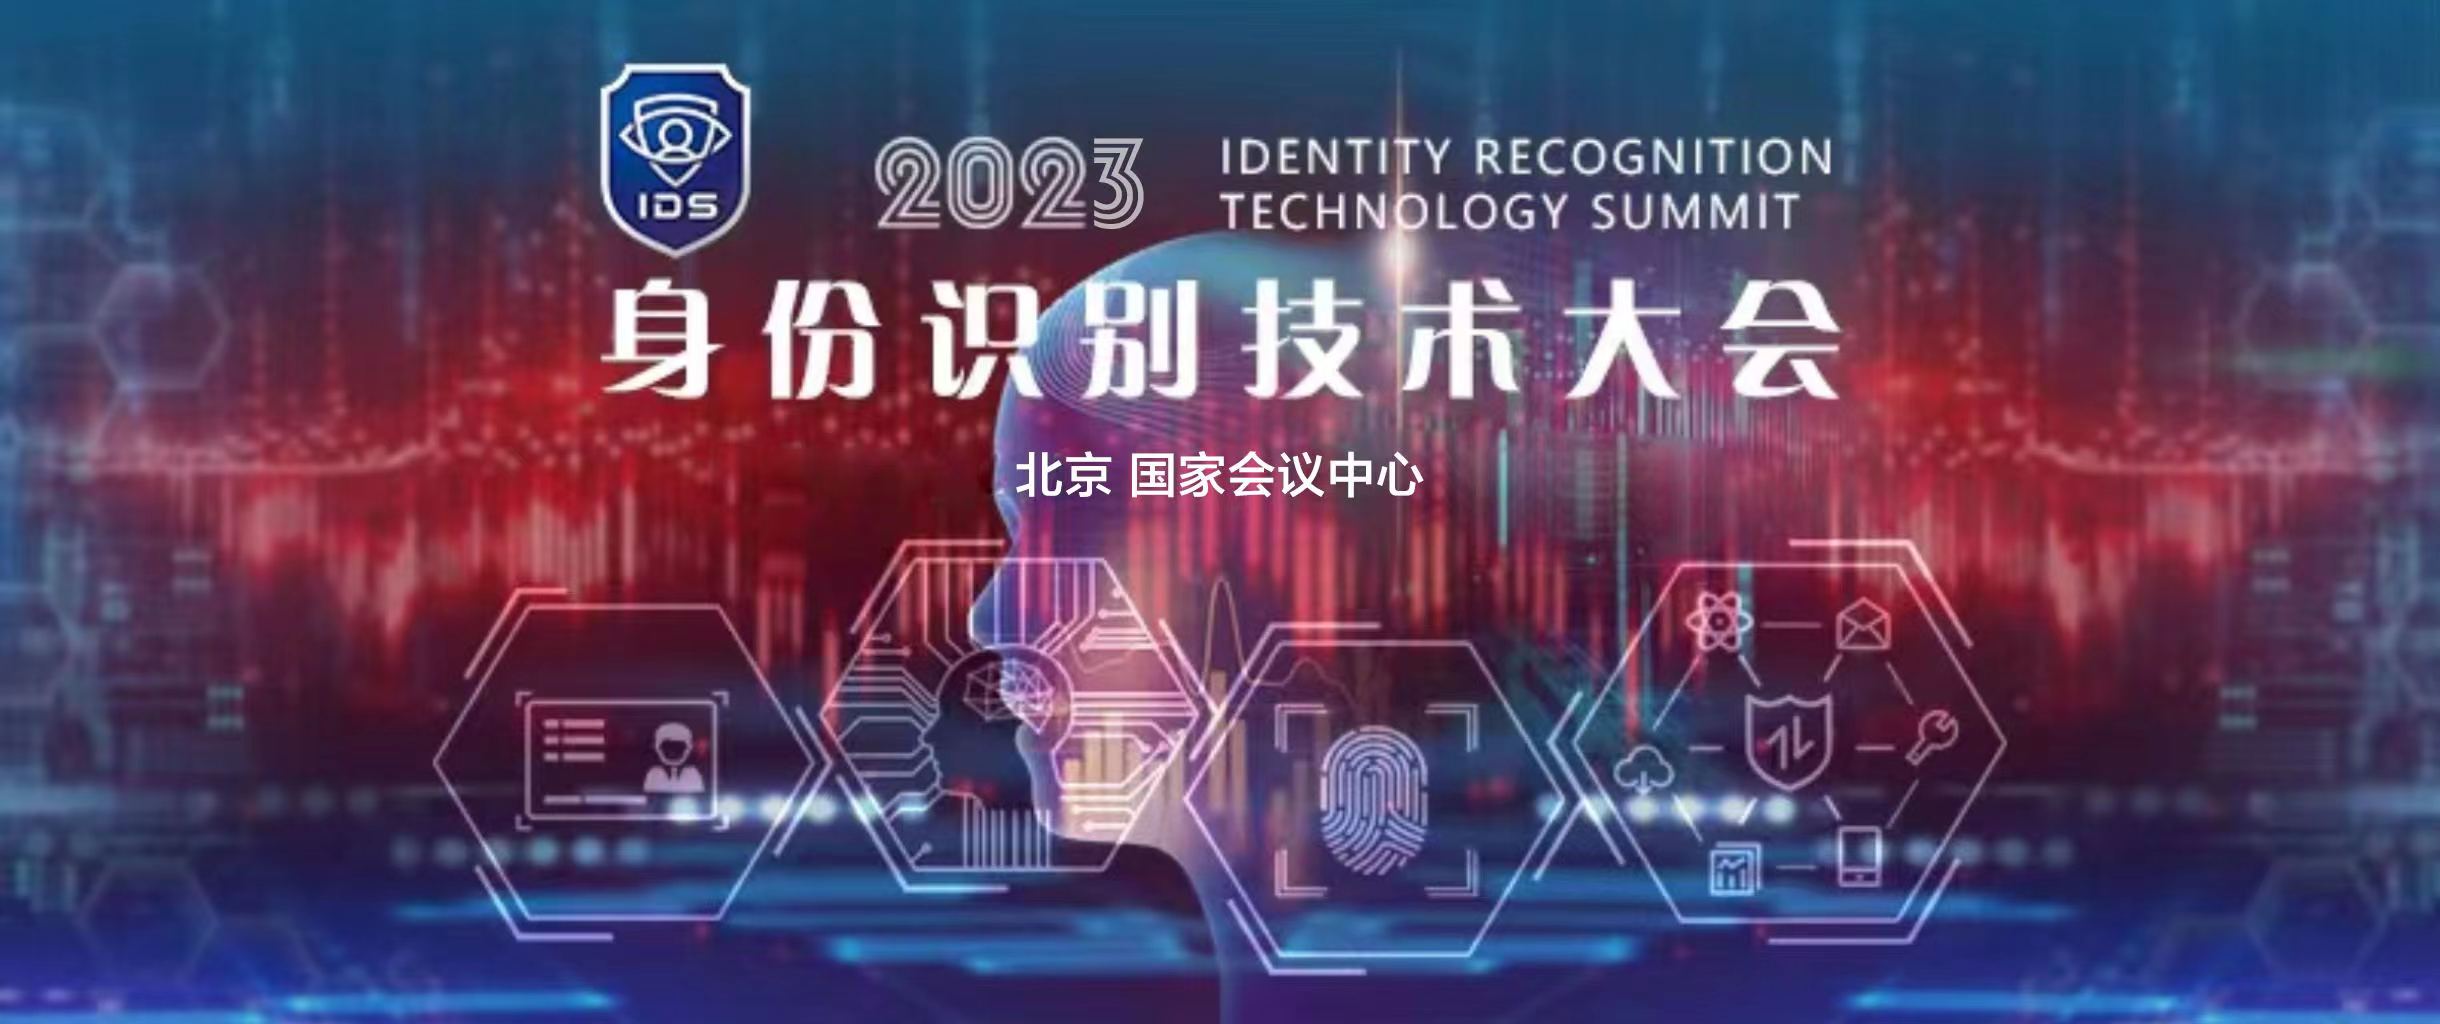 2023身份识别技术大会